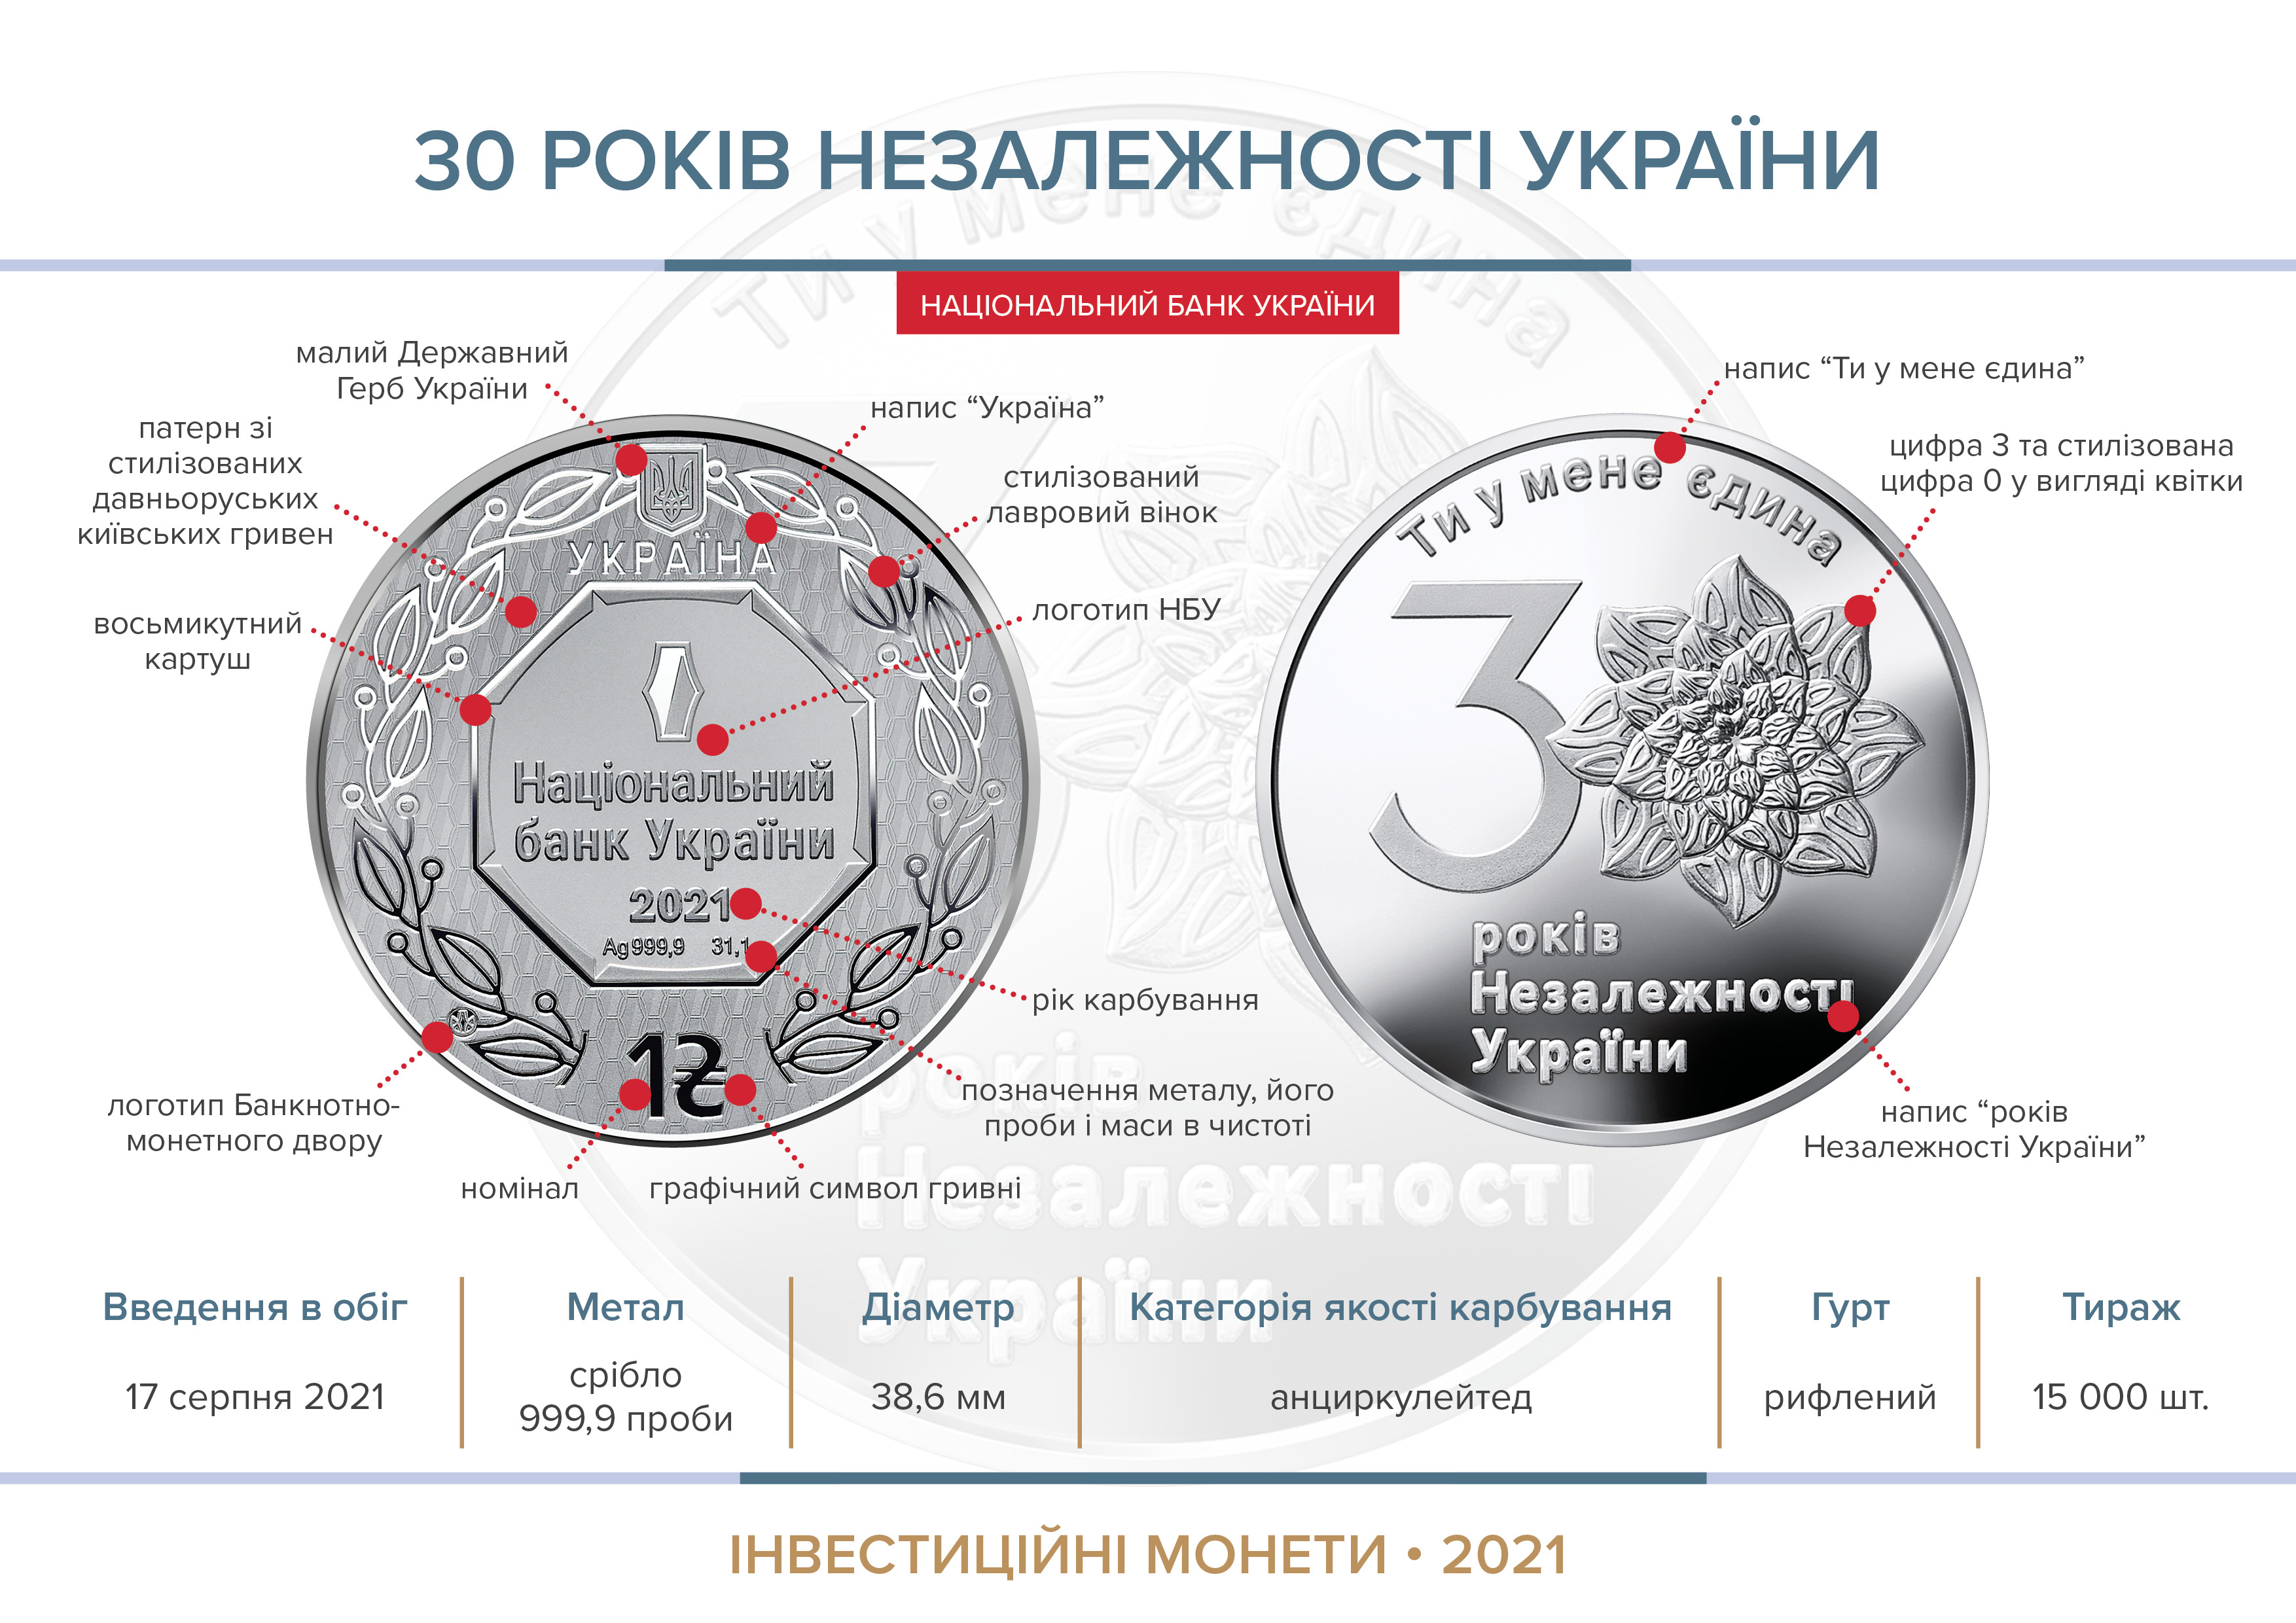 Інвестиційна монета "30 років незалежності України" (срібло) вводиться в обіг з 17 серпня 2021 року